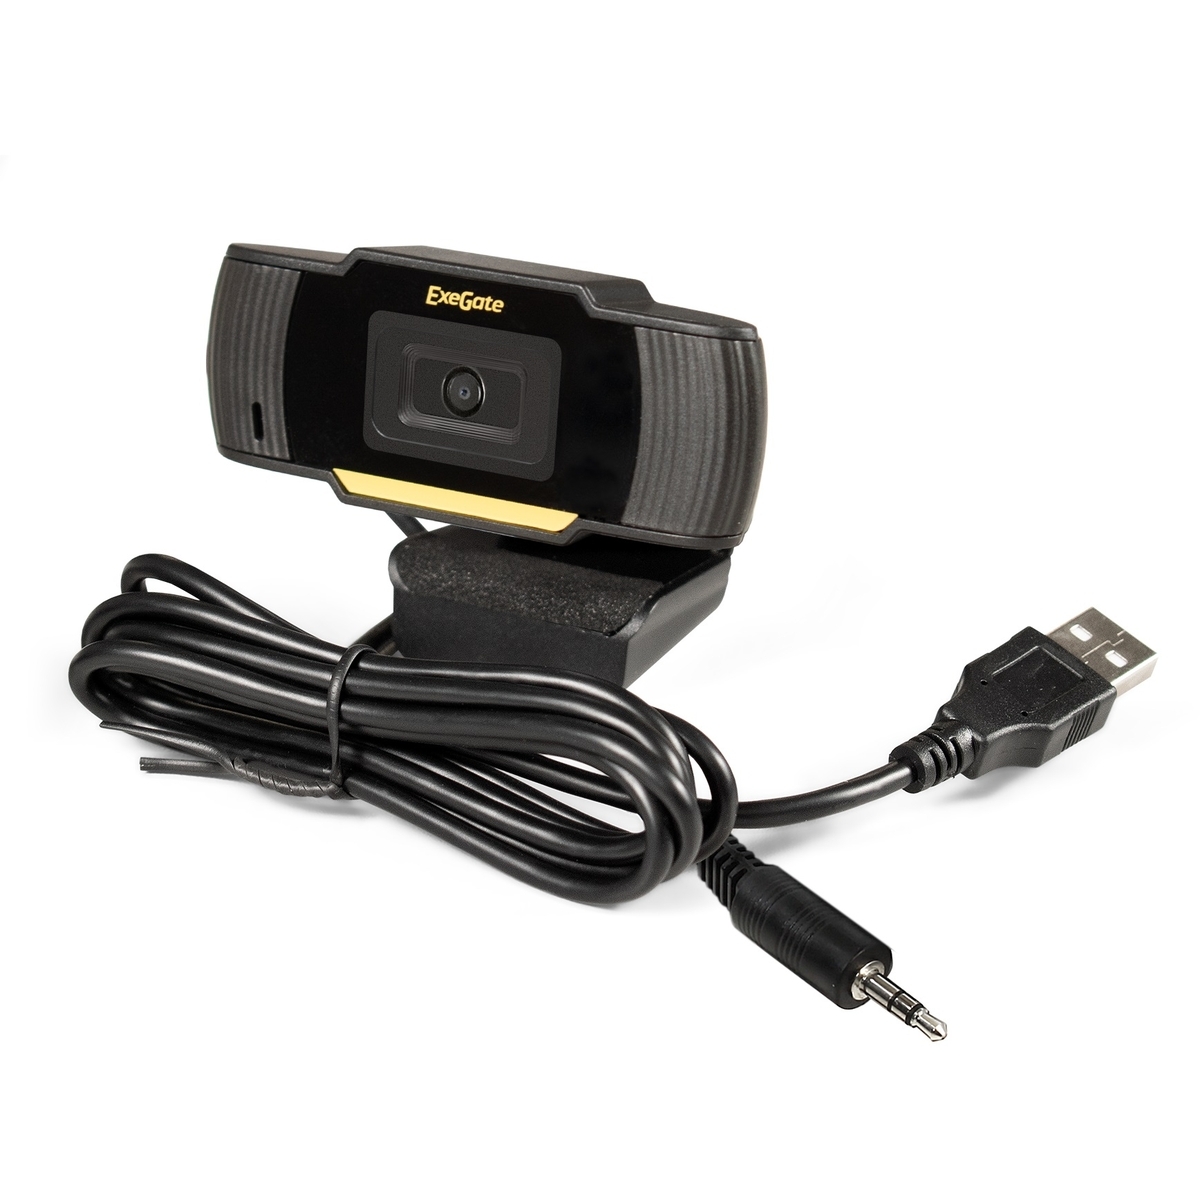 Веб-камера ExeGate GoldenEye C270 (EX286180RUS) веб камера 60fps 1080p автофокус потоковое hd веб камера emeet c970 со штативом и микрофоном мини камера для ноутбука настольный пк